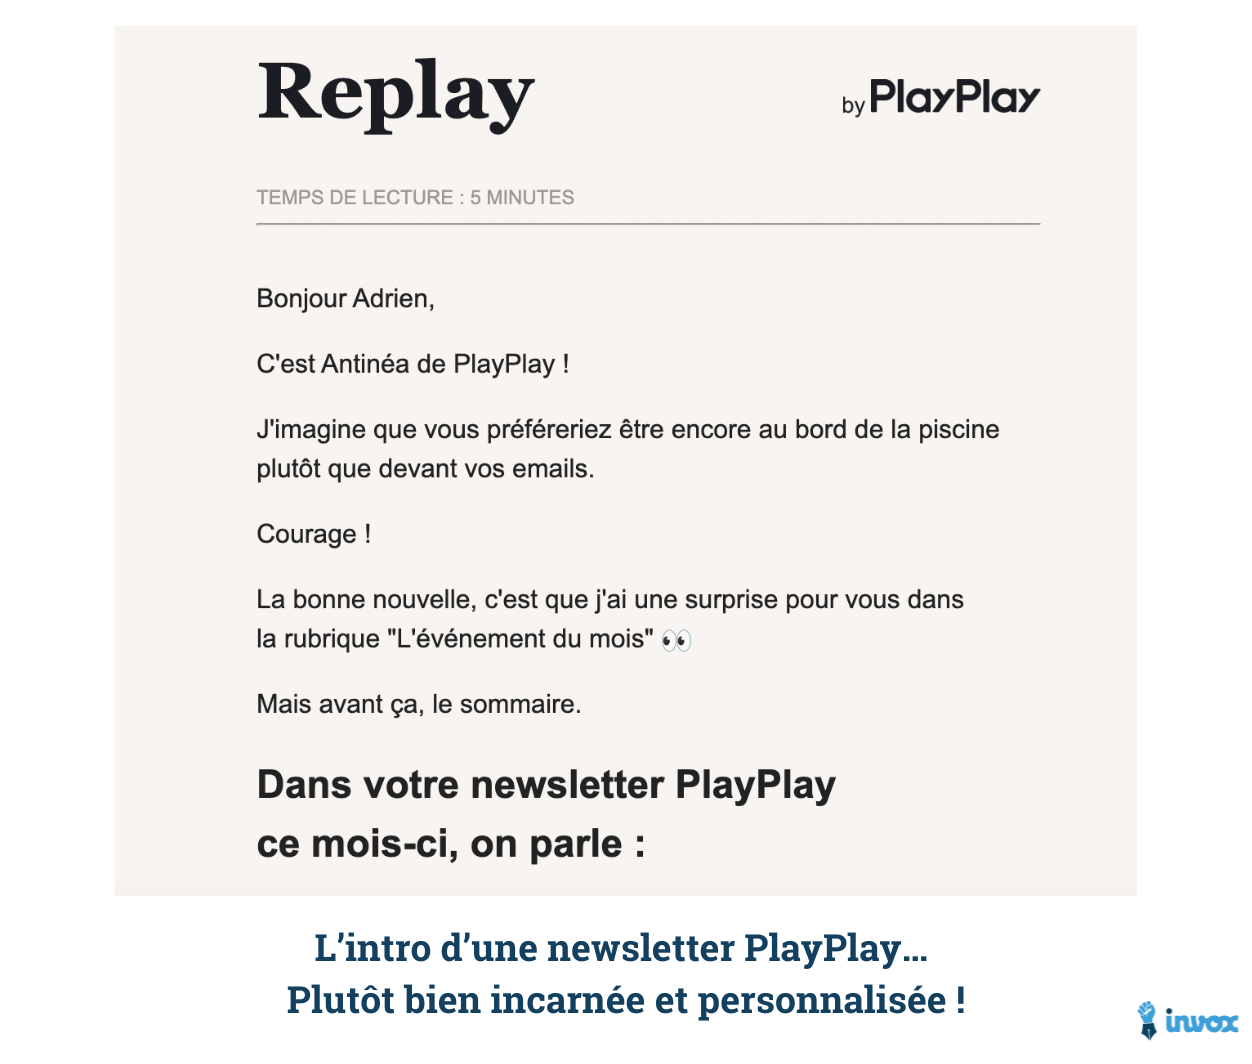 L’intro d’une newsletter PlayPlay… Plutôt bien incarnée et personnalisée !